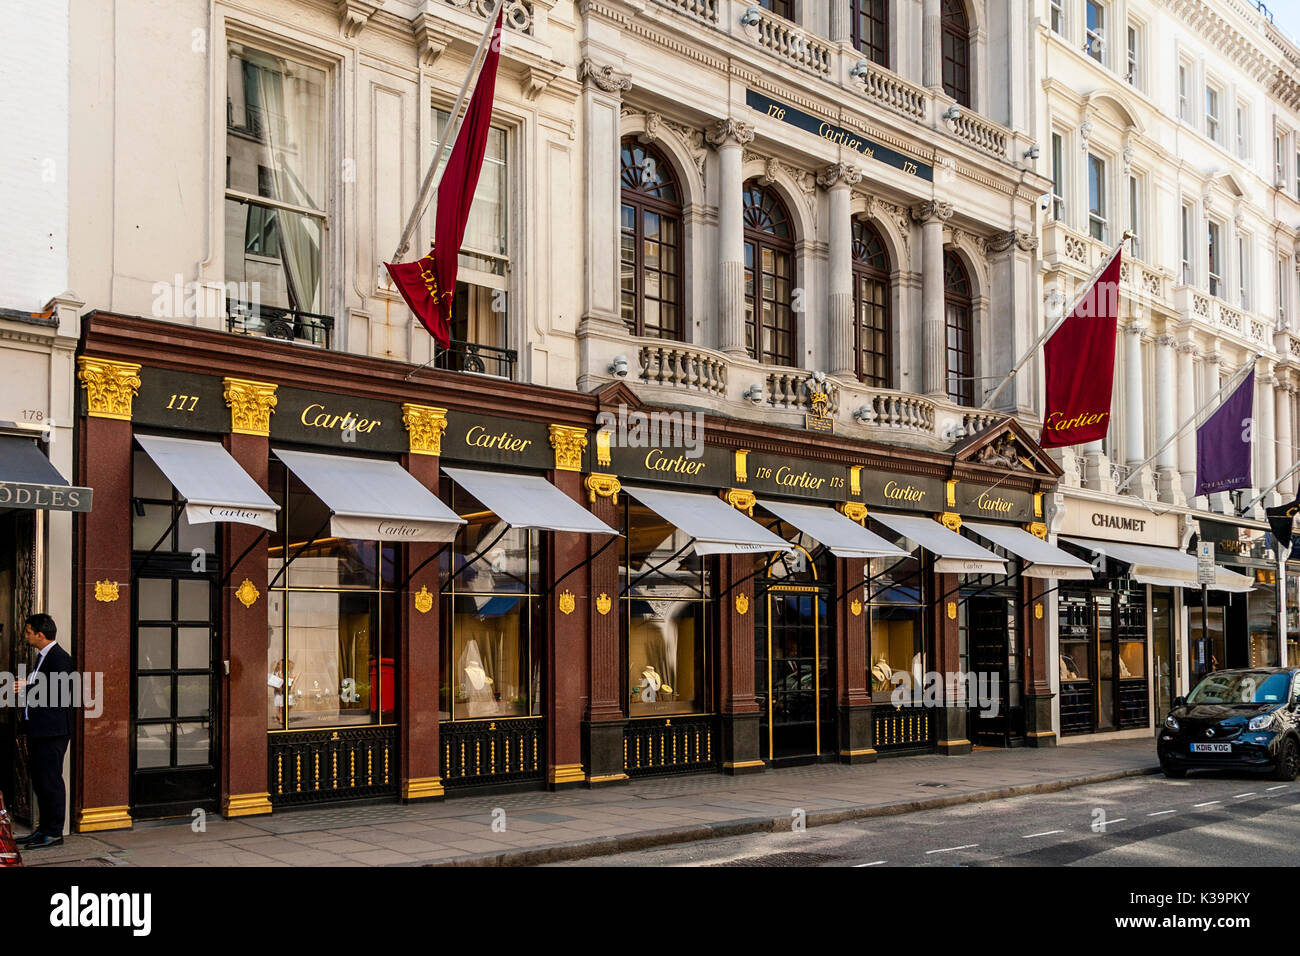 El Cartier joyería y tienda de regalos en New Bond Street, Londres, Reino Unido. Foto de stock